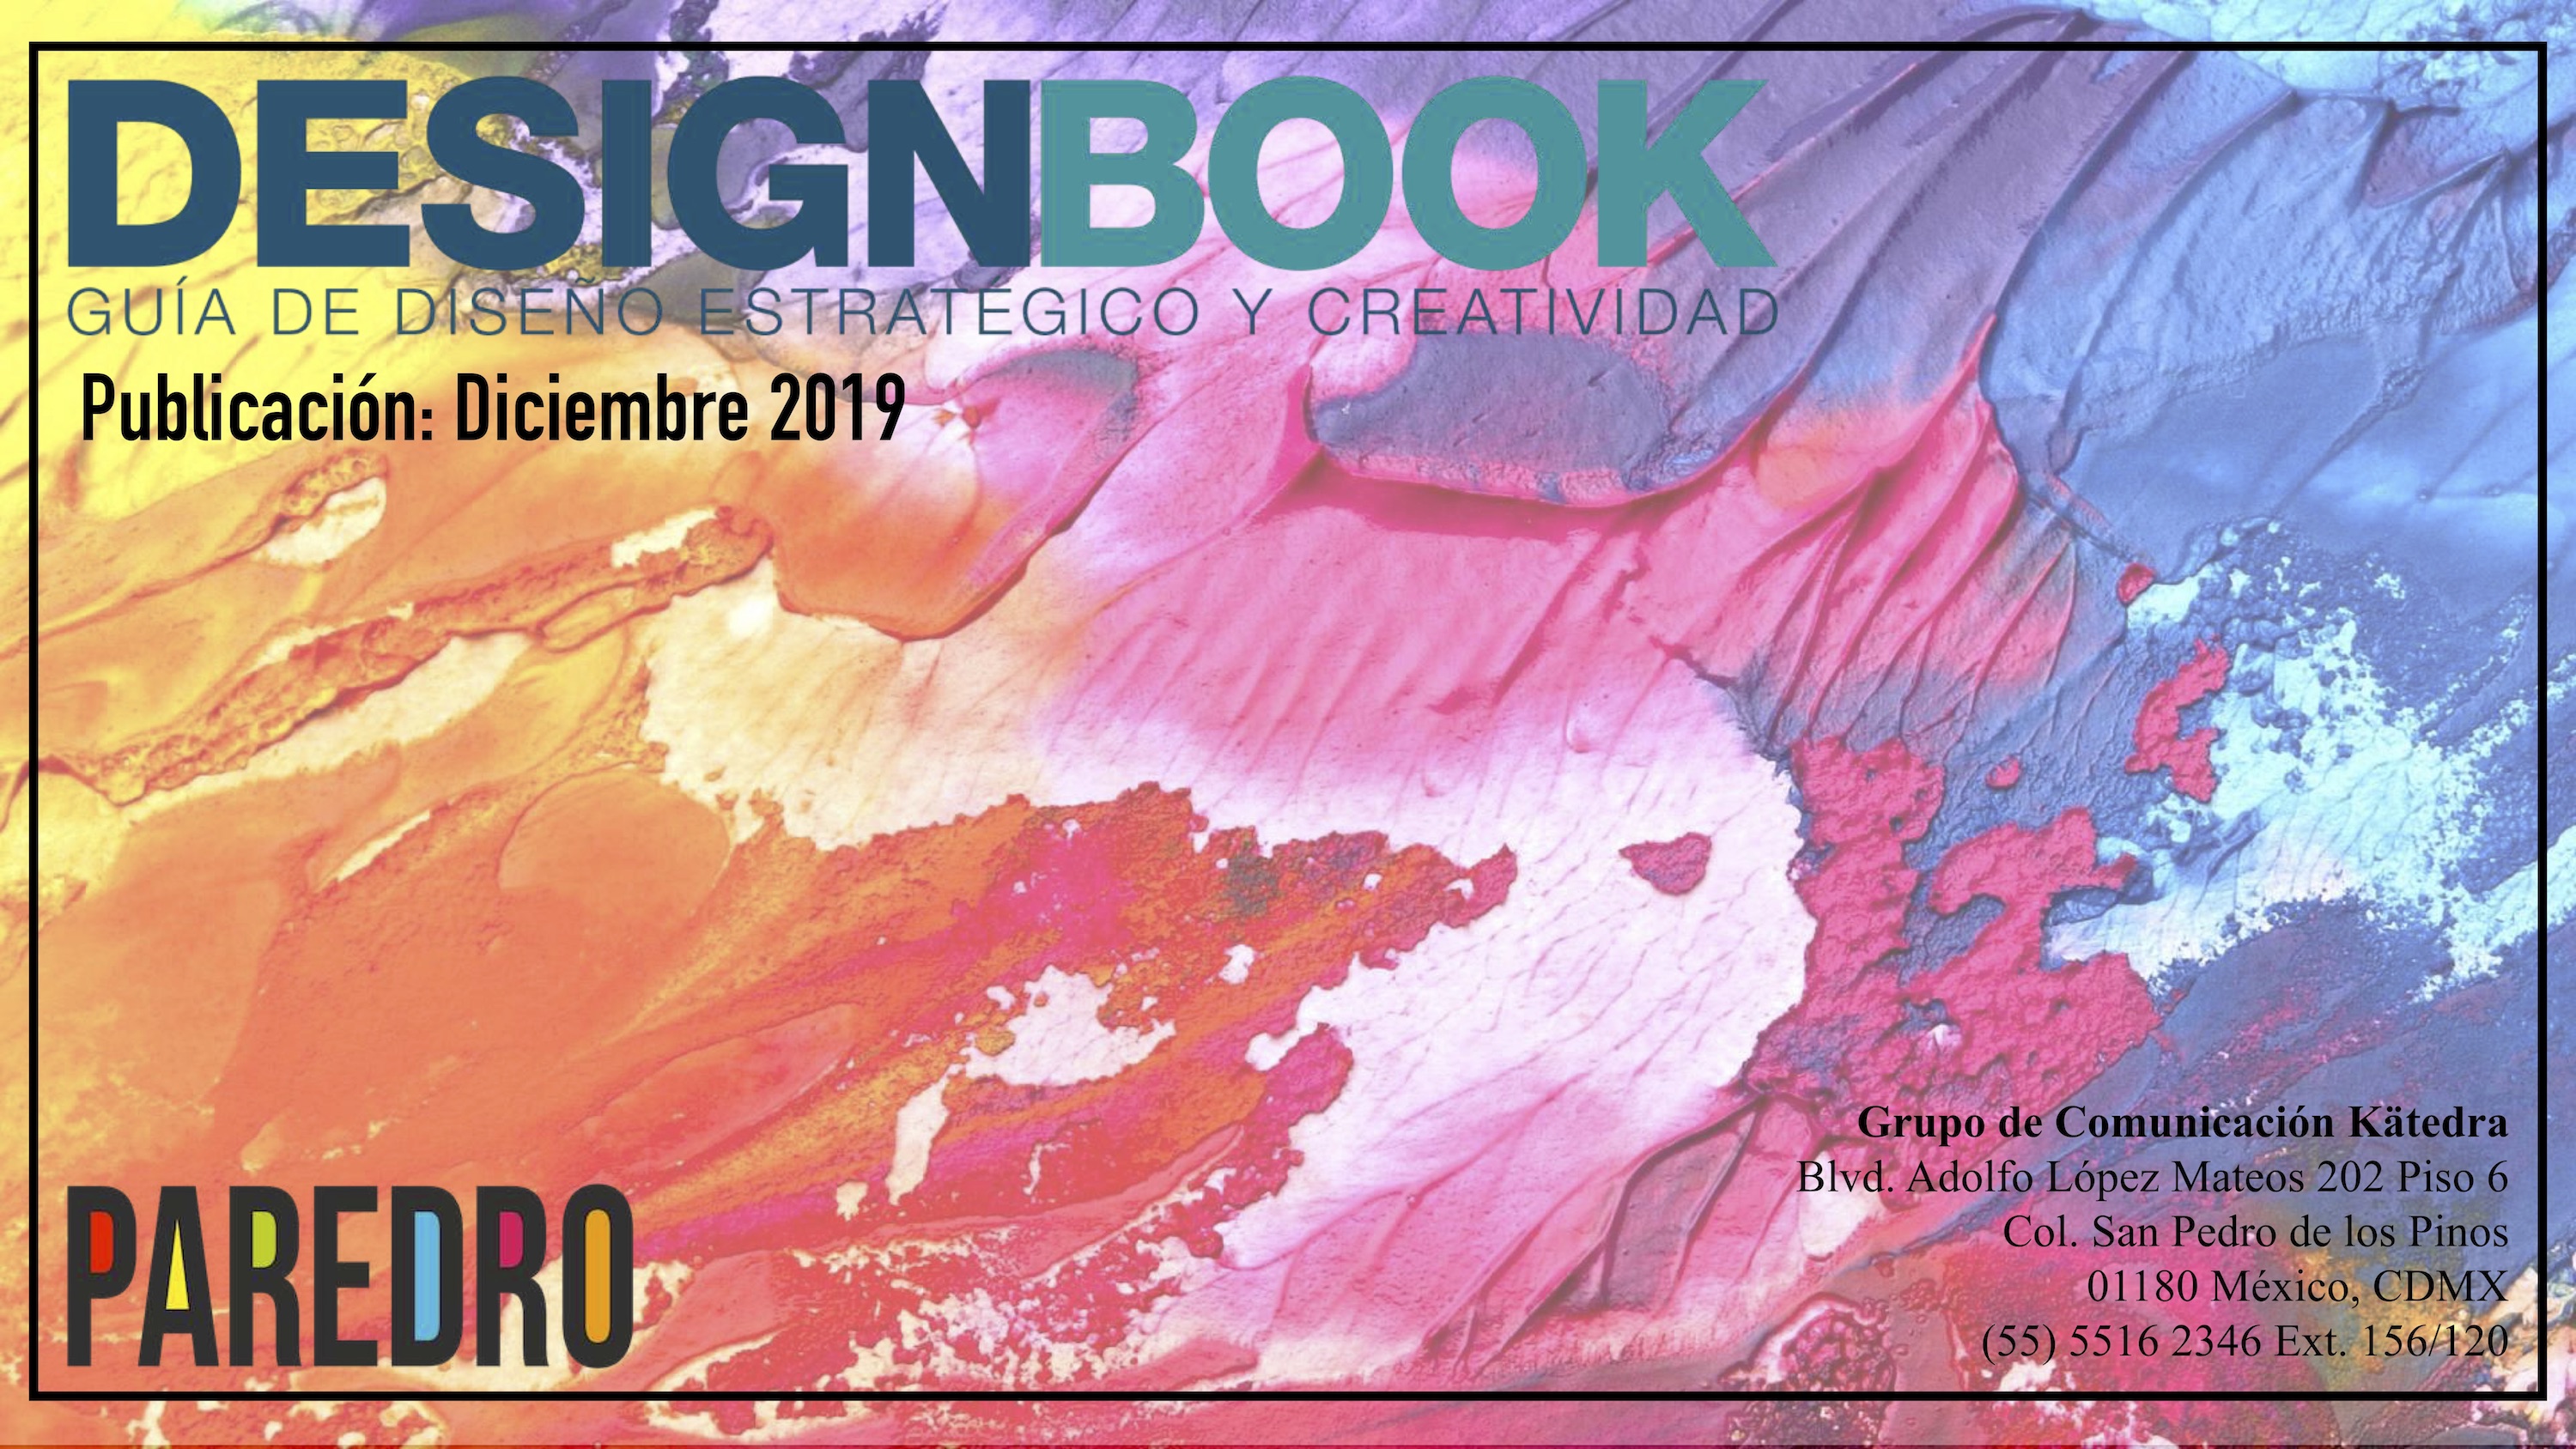 La próxima edición del DesignBook 2019 se acerca y en Paredro ya nos estamos preparando para recibir a tu agencia creativa o de diseño.